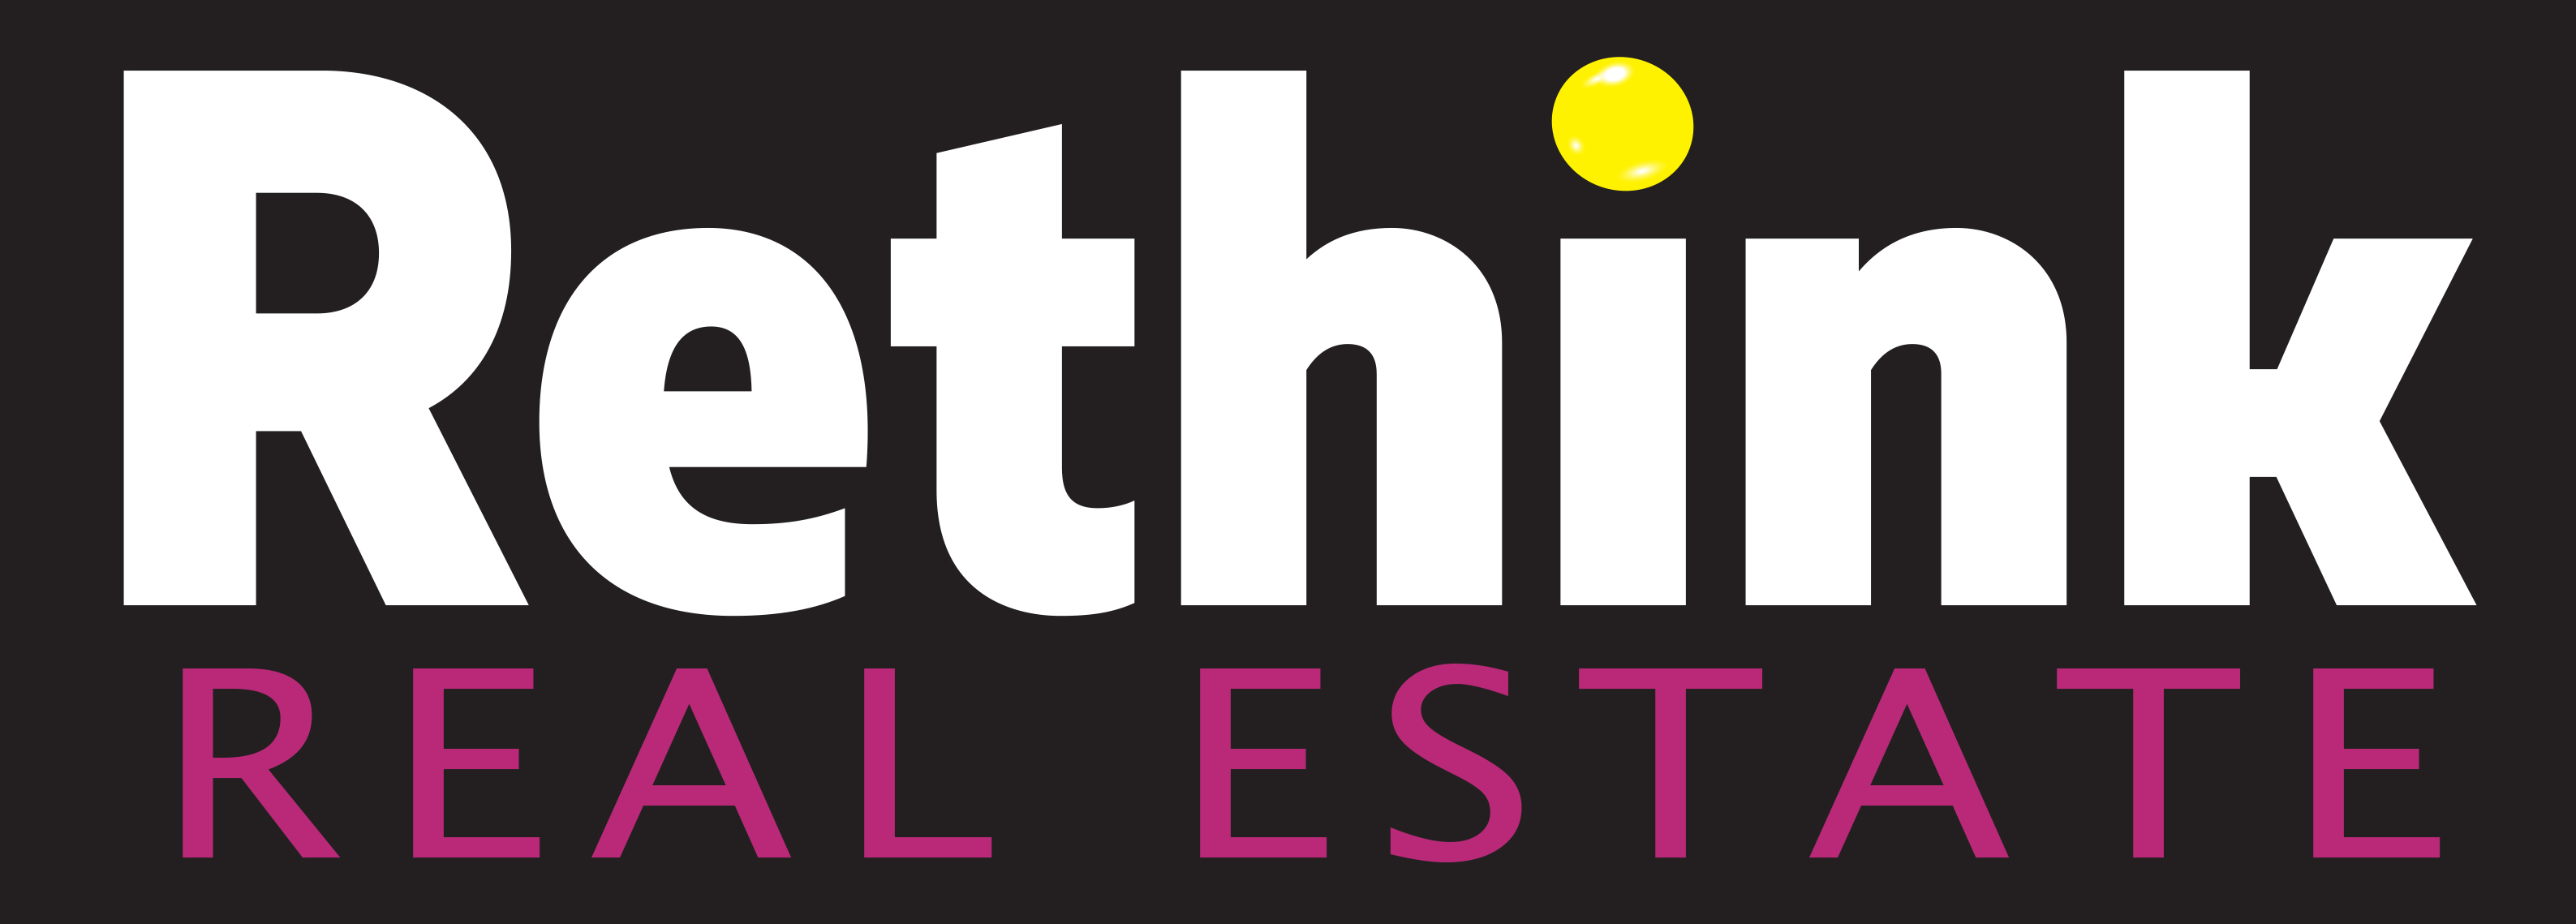 Rethink Logo